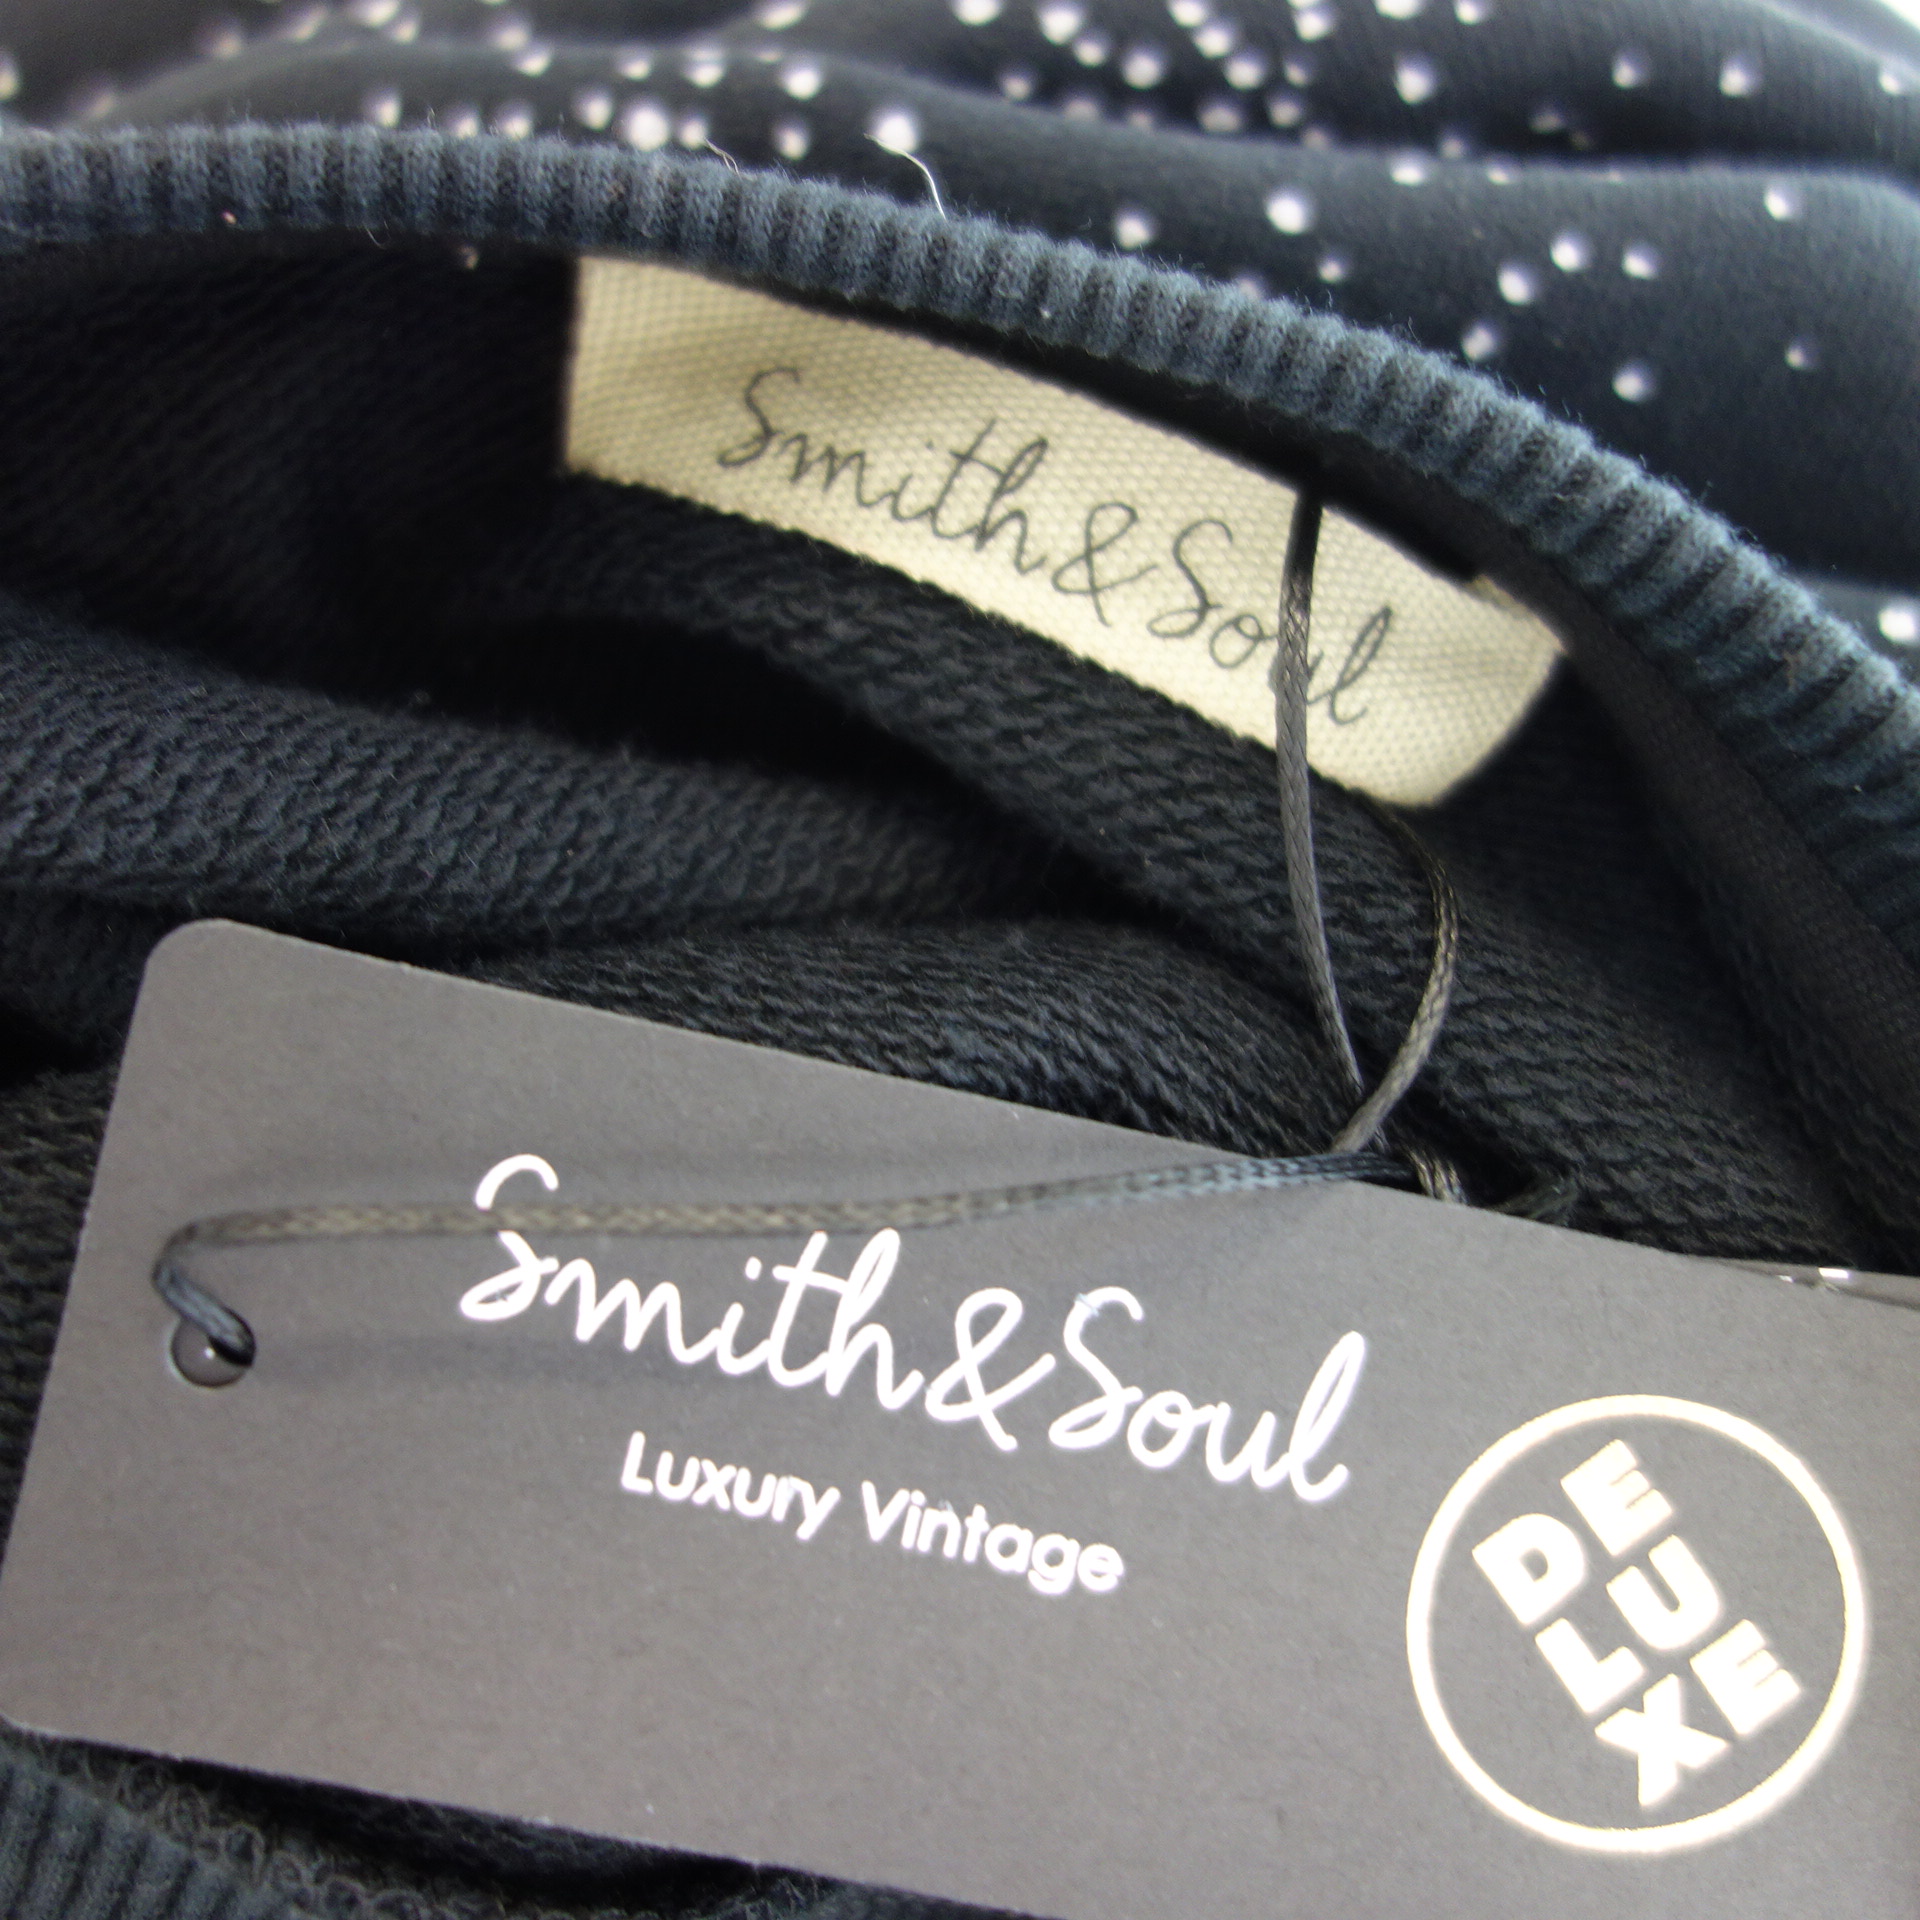 SMITH & SOUL Damen Sweater Sweatshirt Pullover Shirt Schwarz Muster Größe S